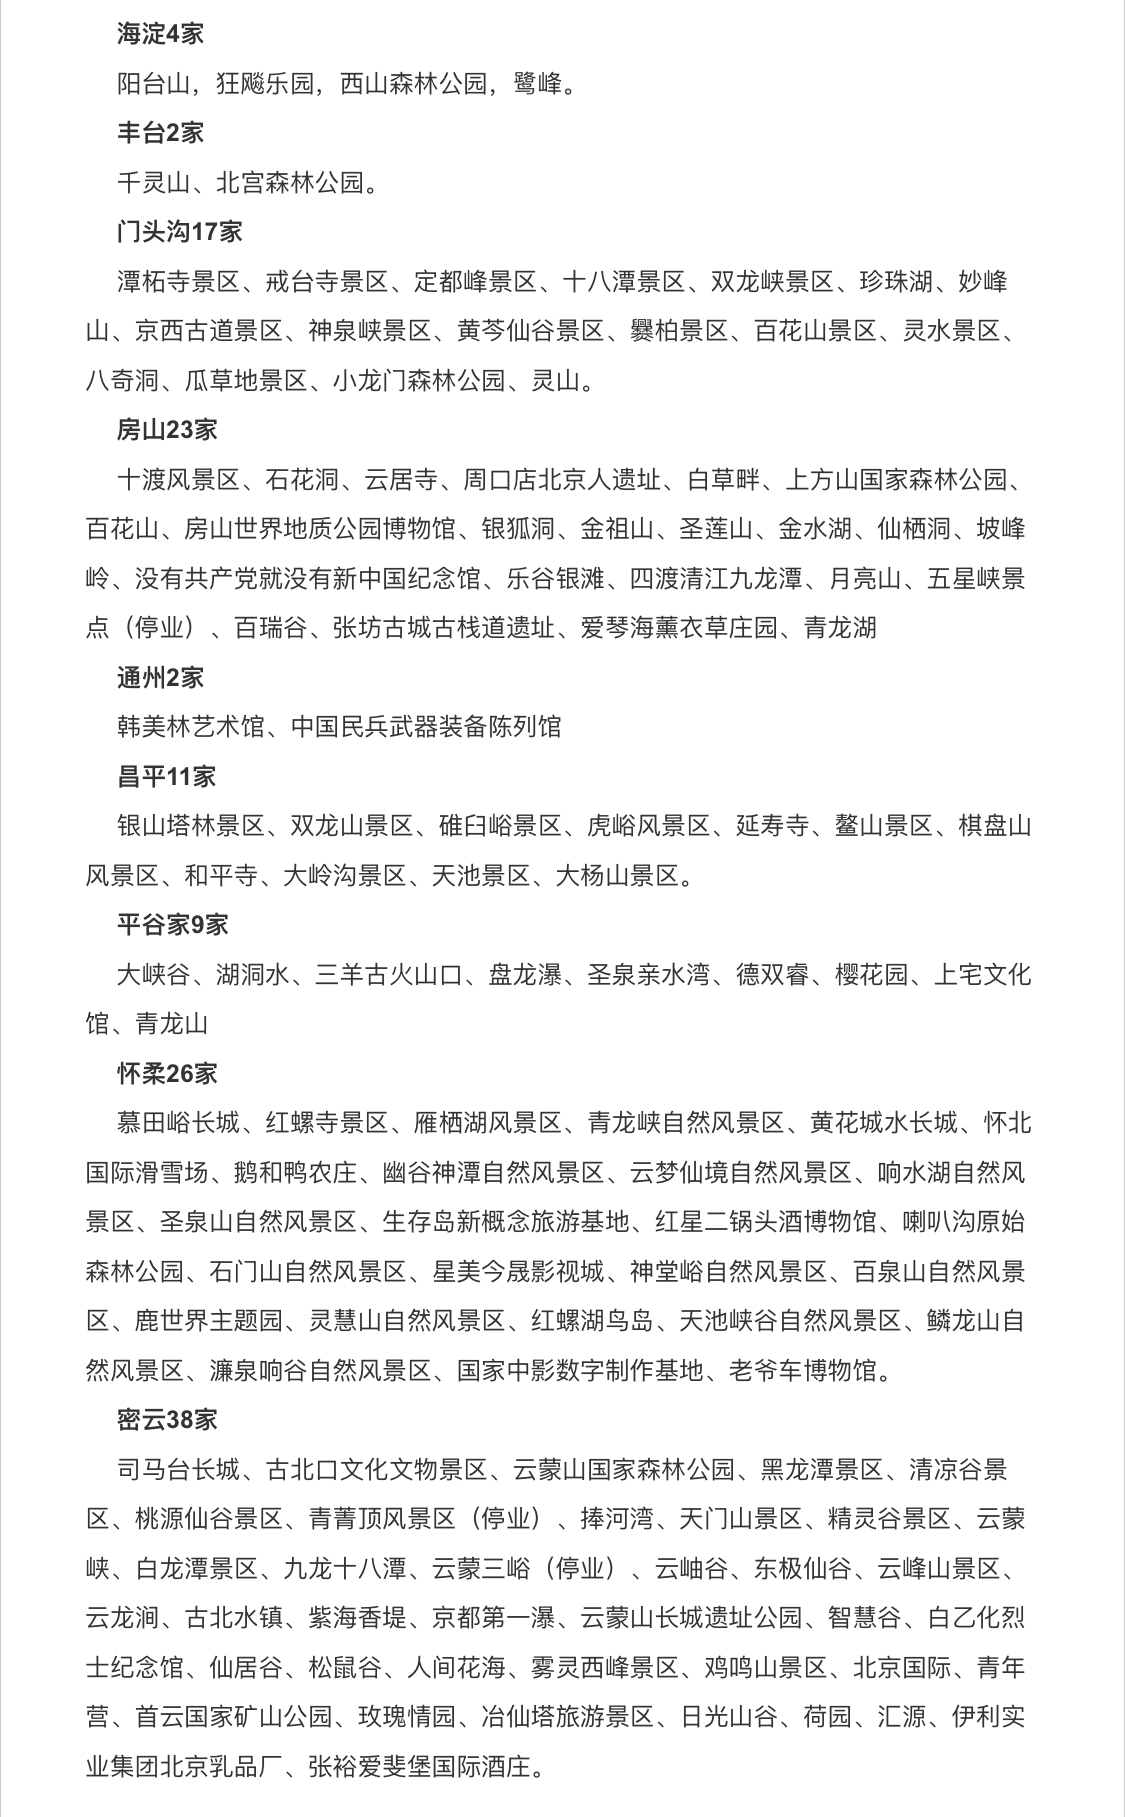 北京因降雨临时关闭132家景区